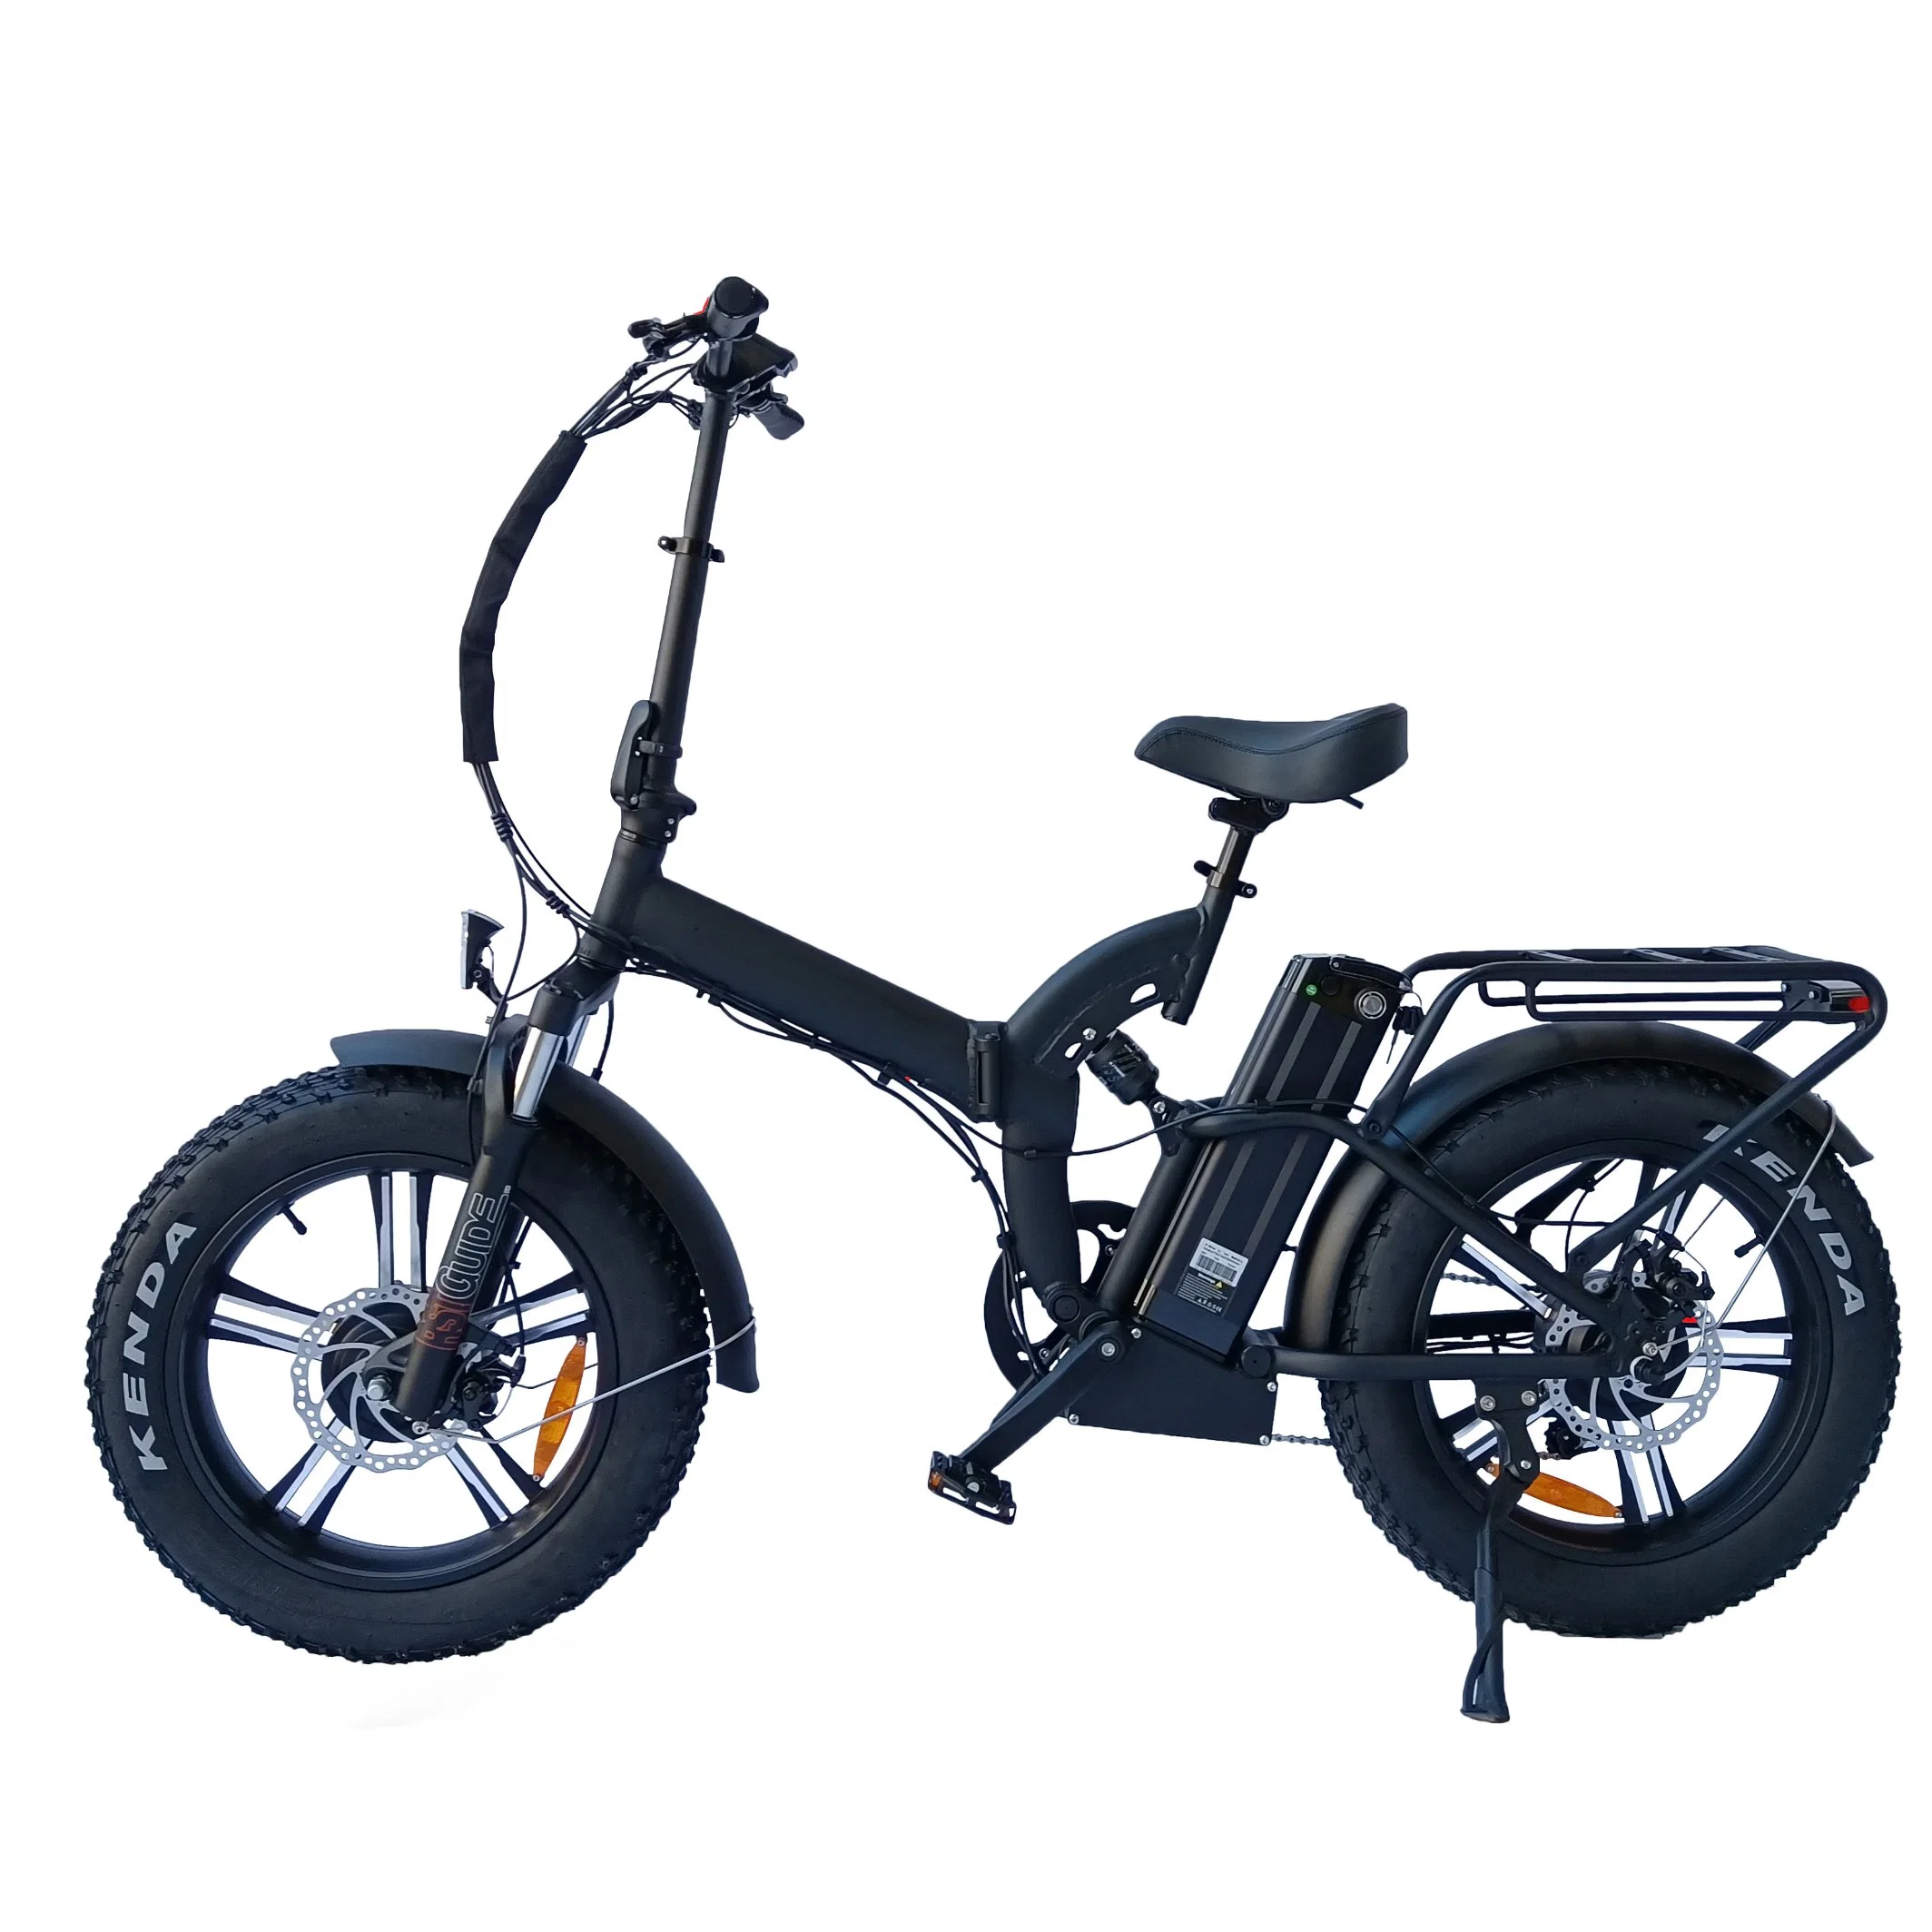 2022 Top venda de bicicletas eléctricas Retro 500W 750W Ebike Vintage Motor Bafang CE/EN15194